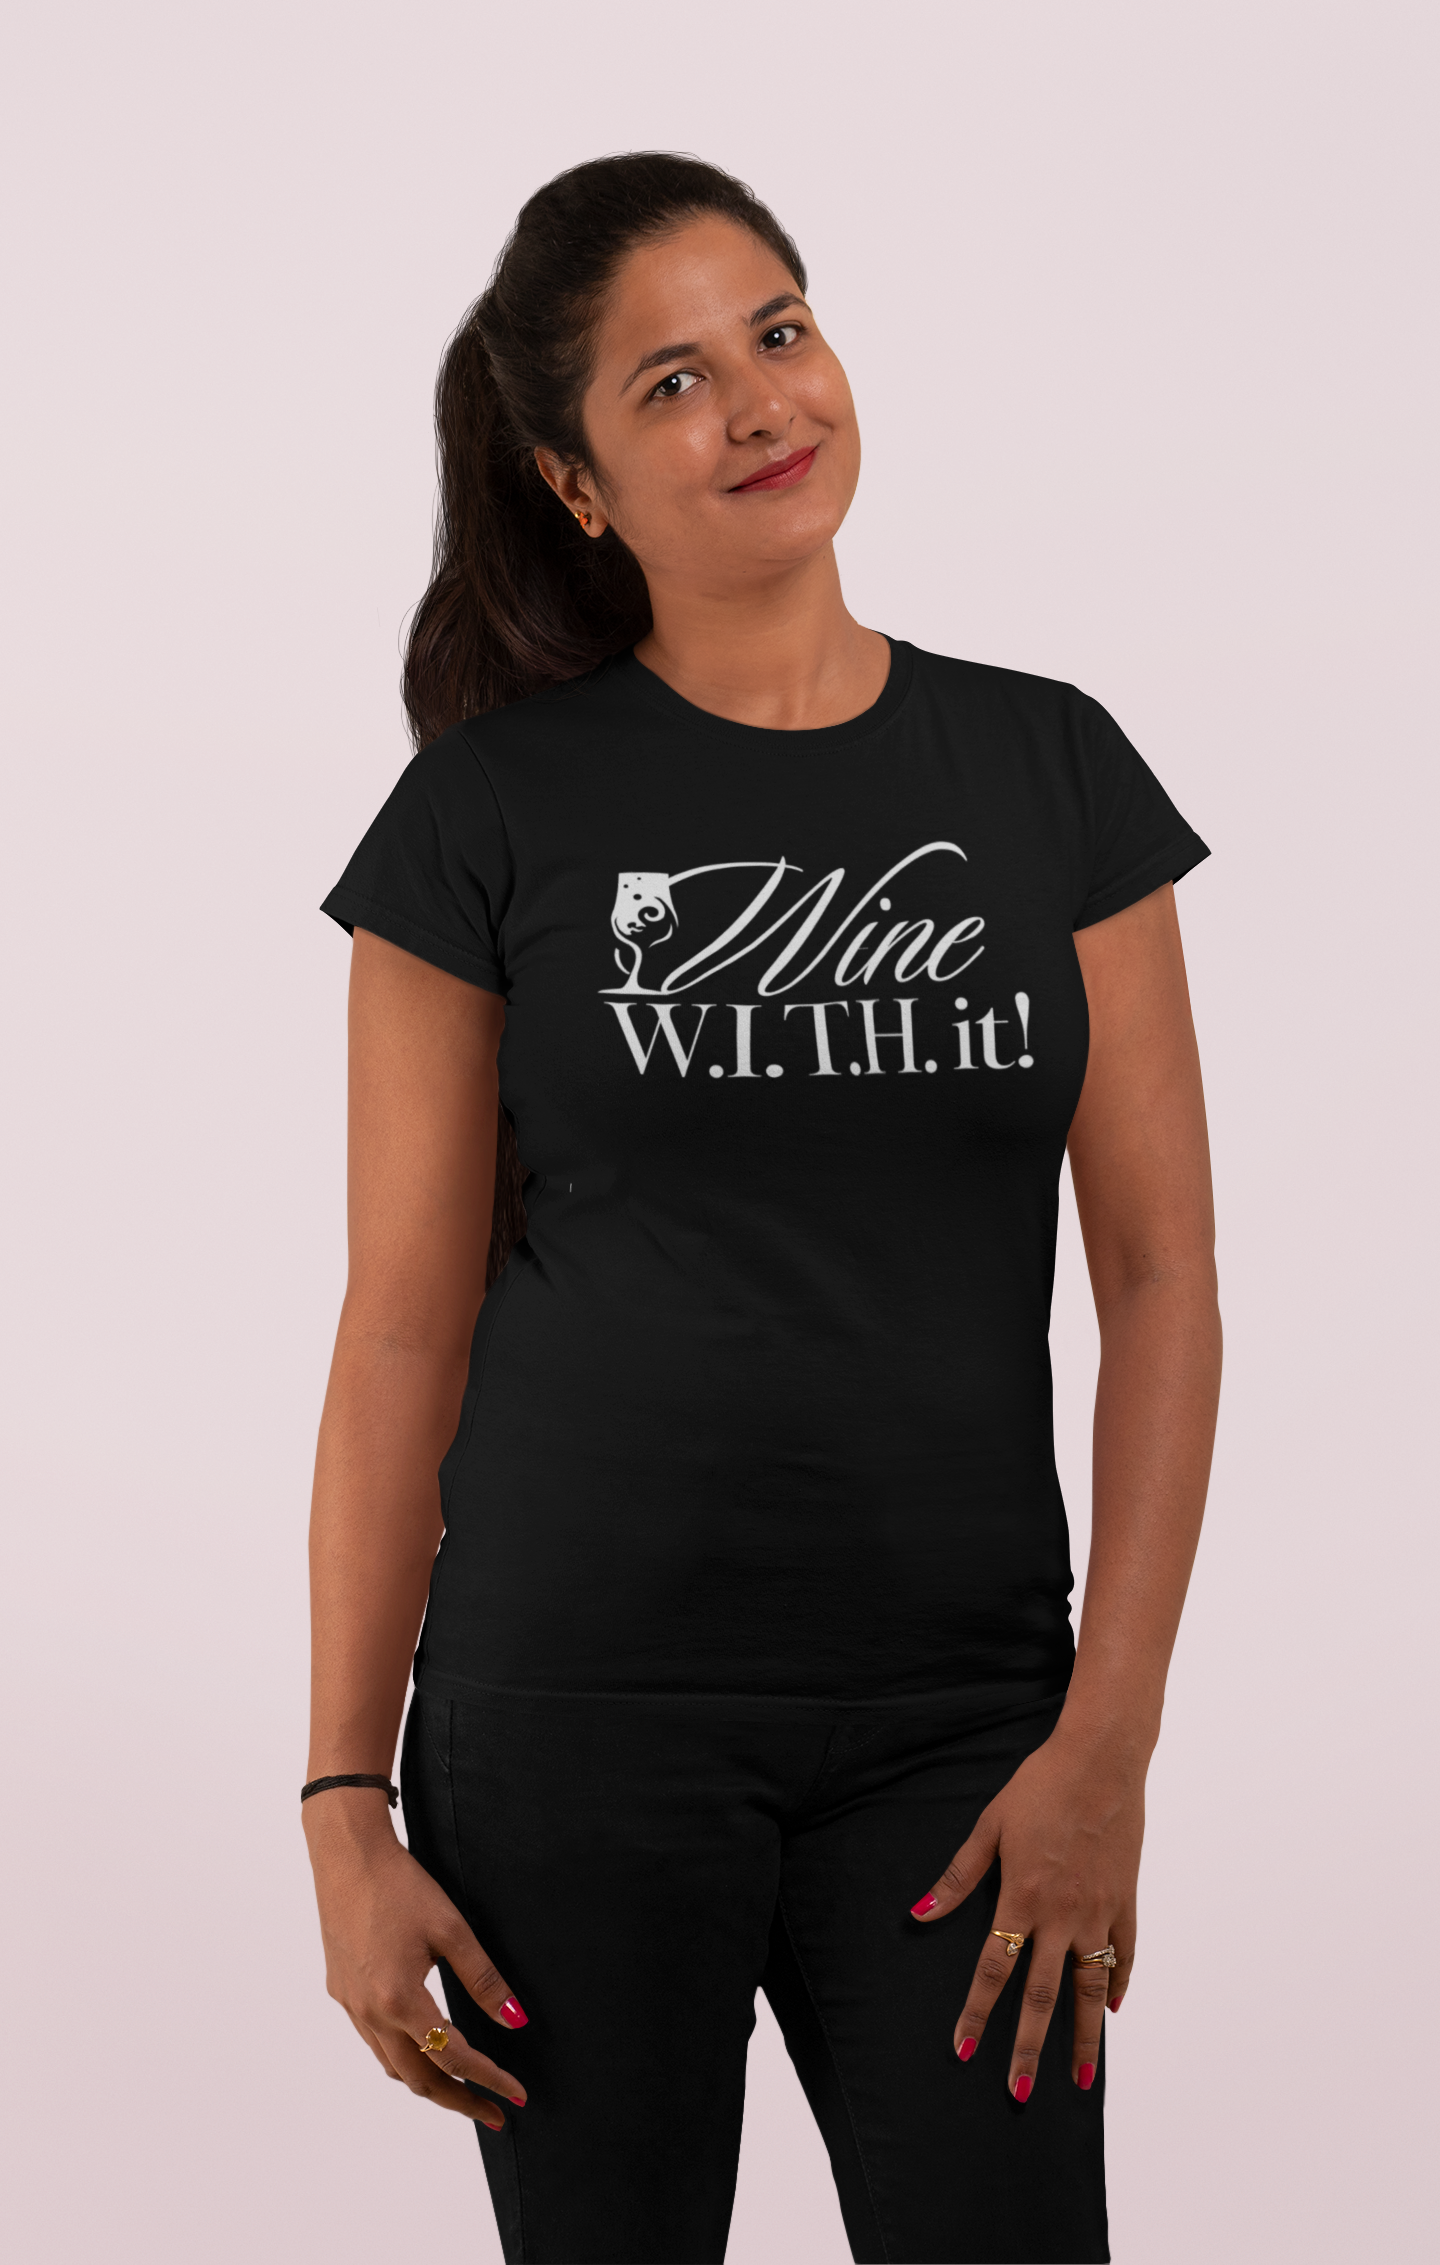 Wine W.I.T.H. it T-Shirts — San Diego In Tourism & Hospitality